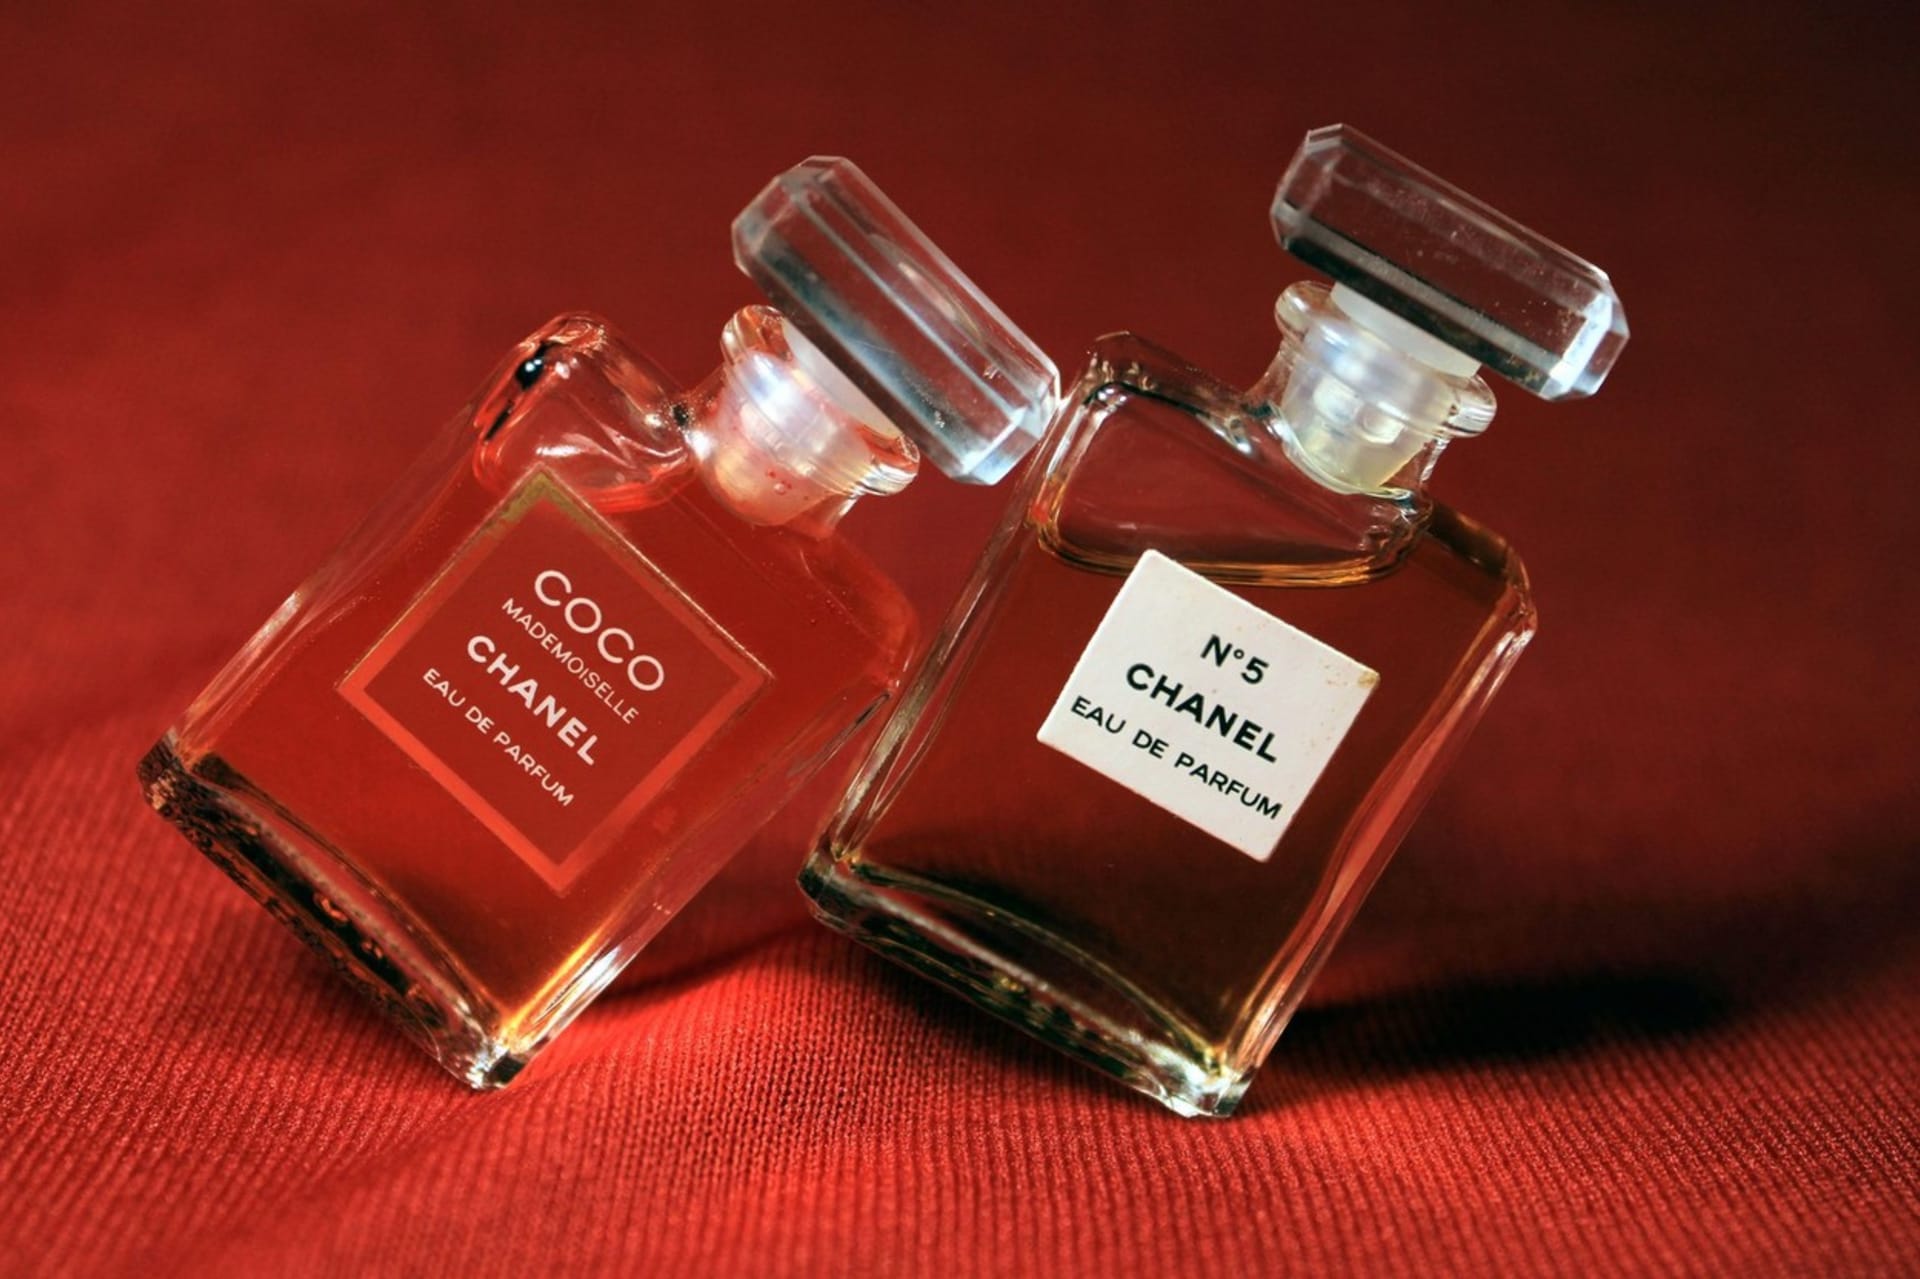 Ikonický parfém Chanel n. 5 patří doposud k nejoblíbenějším na světě.